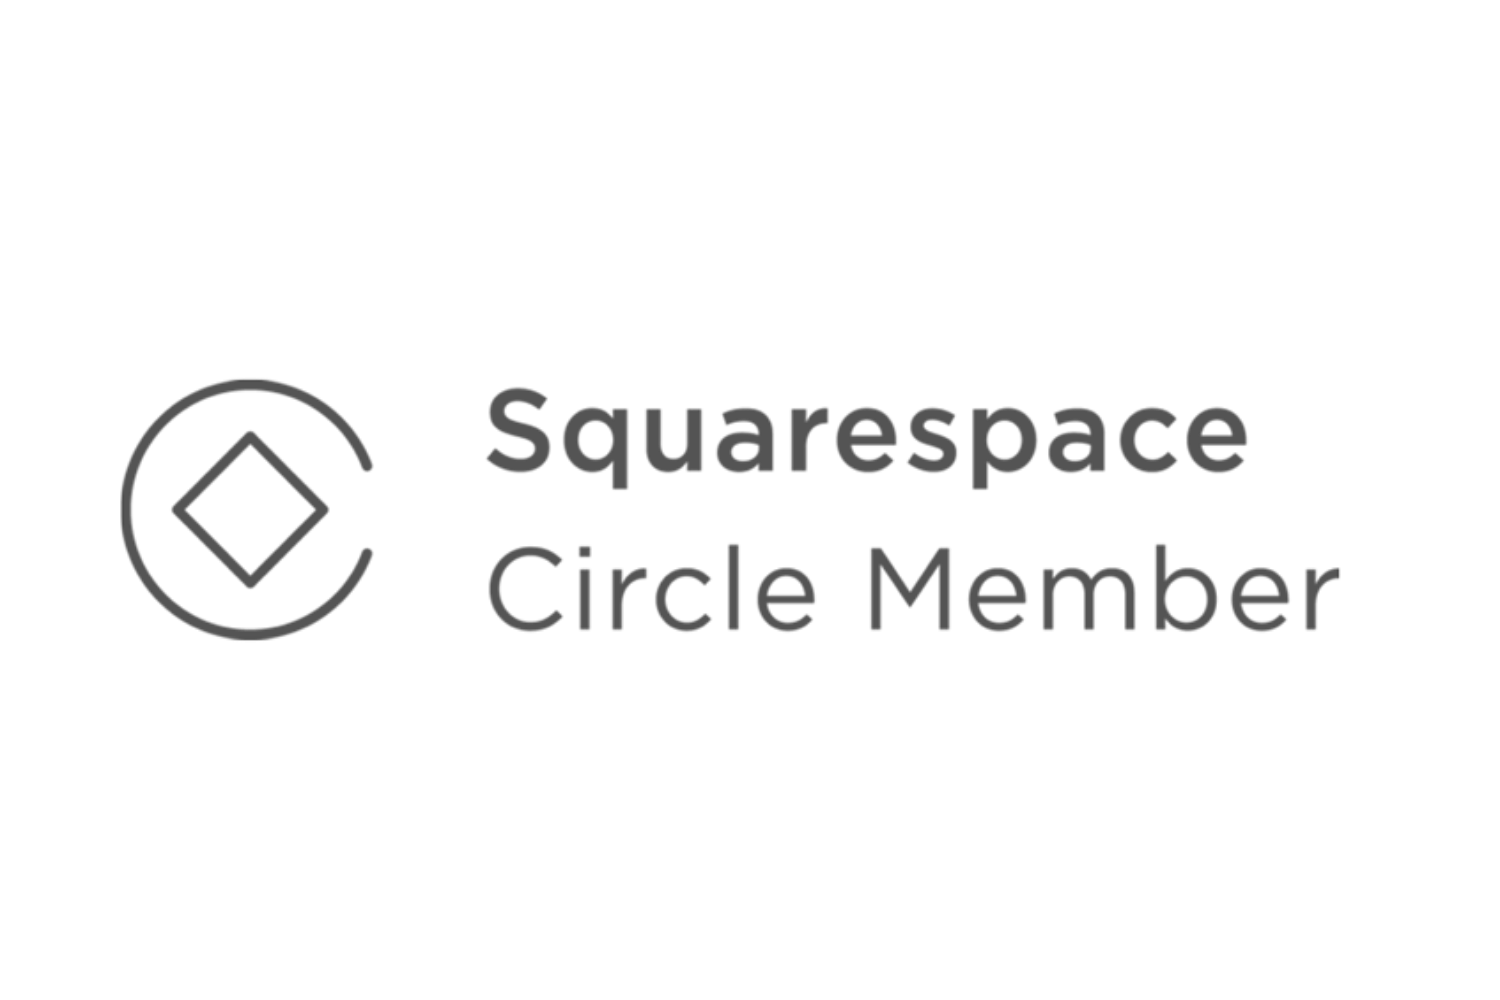 Squarespace Circle Member (1).png